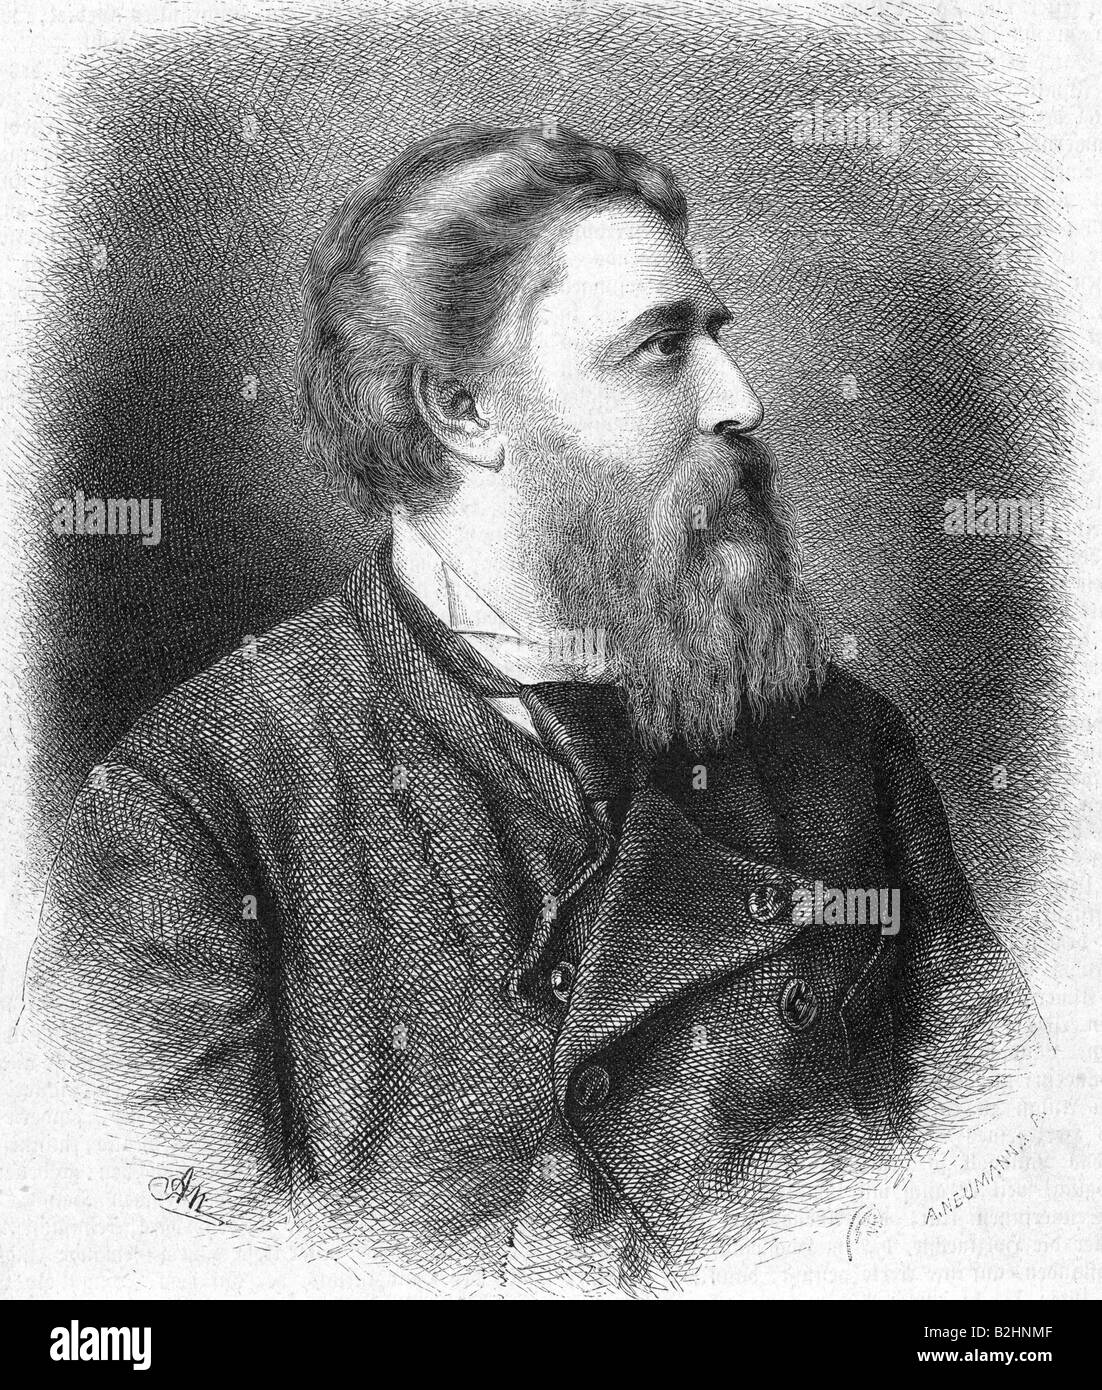 Stieler, Karl, 15.12.1842 - 12.4.1885, auteur/écrivain allemand, portrait, face latérale, gravure d'Adolf Neumann après photographie de Max Fackler, Tegernsee, 19ème siècle, , Banque D'Images